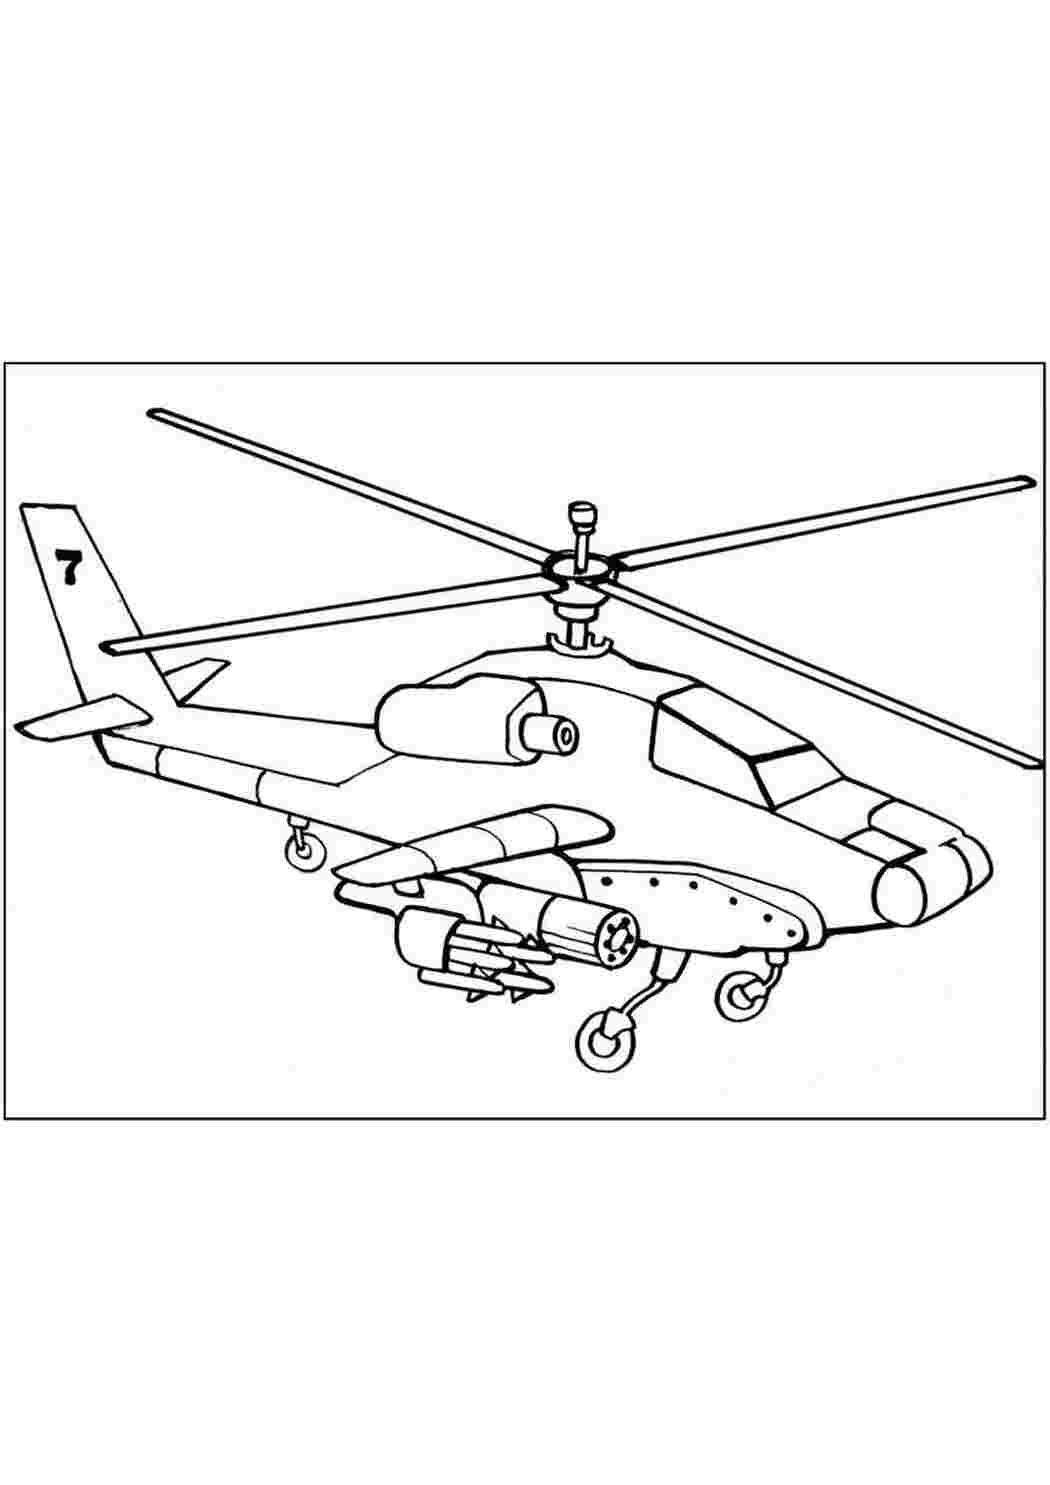 Раскраски картинки на рабочий стол онлайн Военный вертолет с оружием Раскраски для мальчиков бесплатно